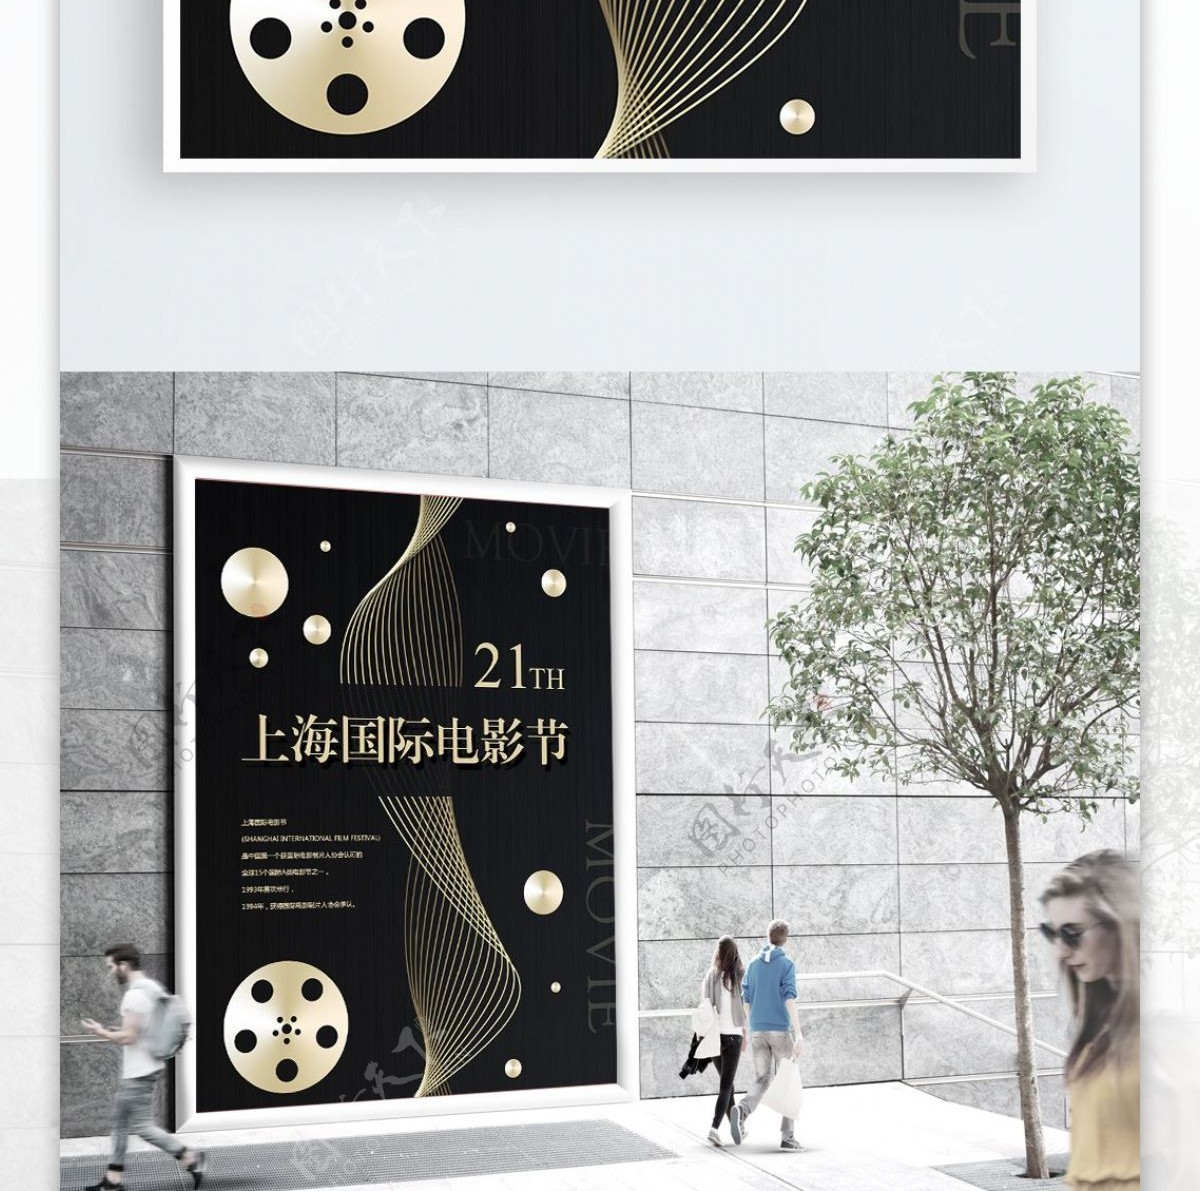 上海国际电影节海报